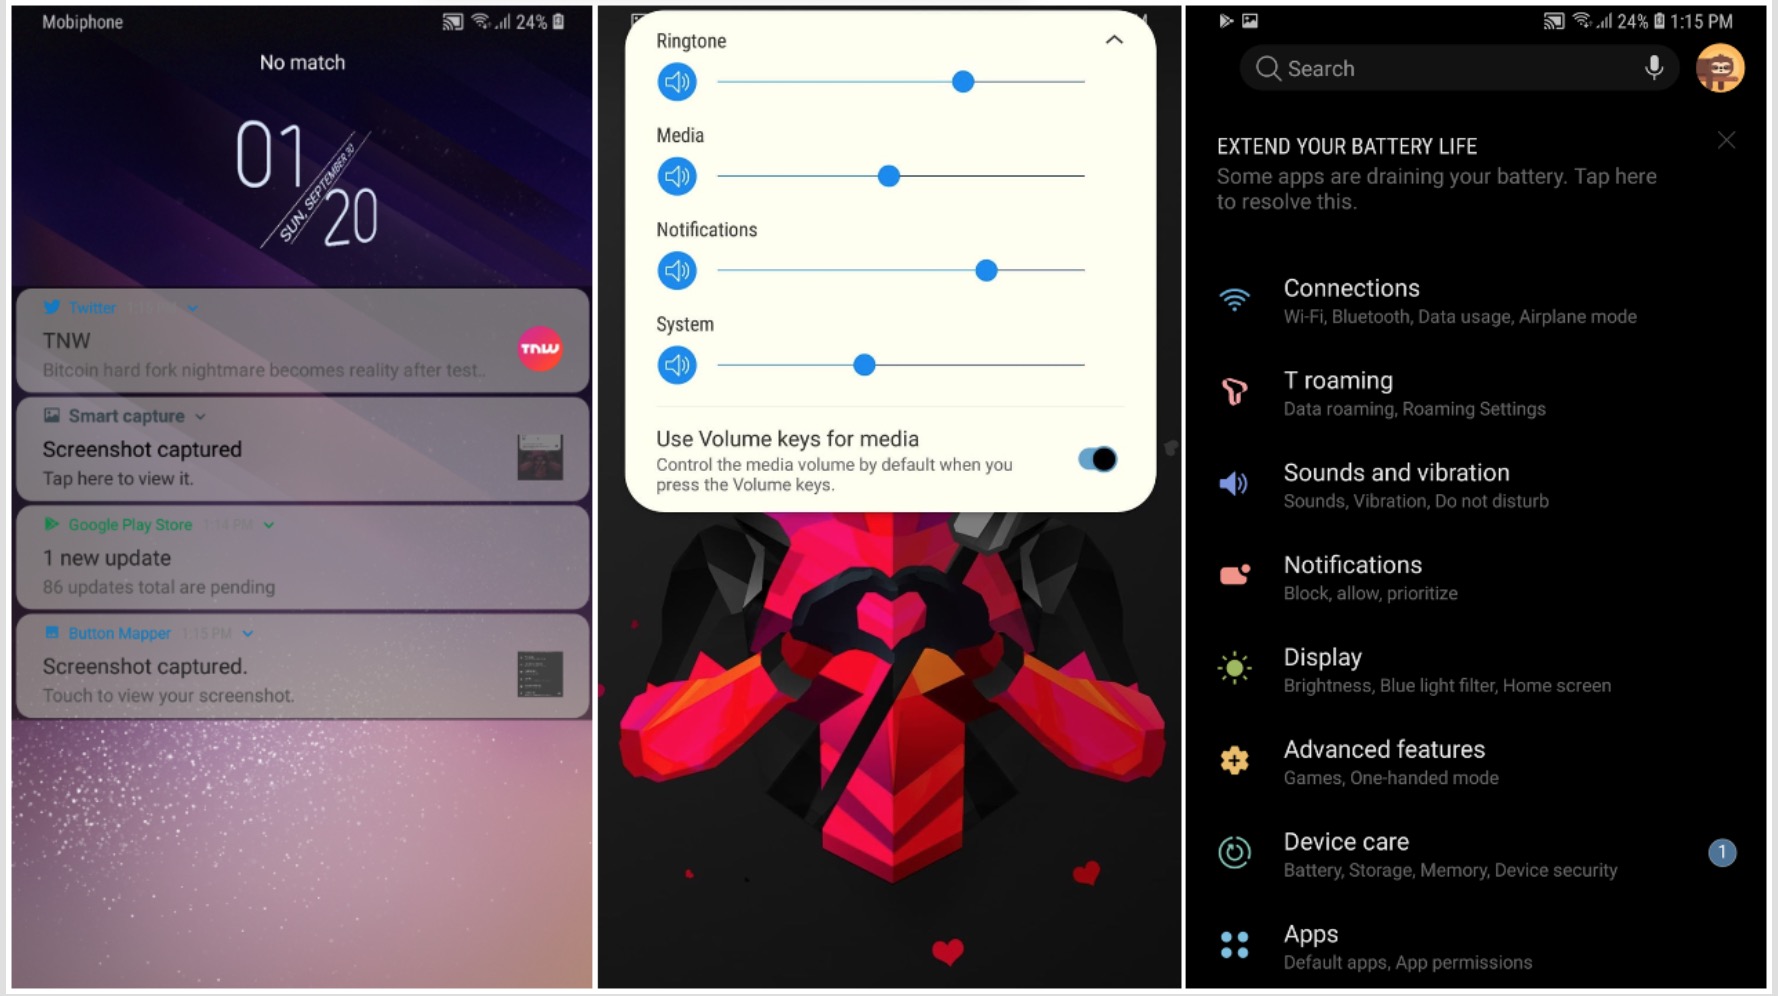 Hướng dẫn cài Experience 10 mới nhất cho Galaxy
S8/S9: Hỗ trợ Dark mode, thanh điều hướng, thông báo được
thiết kế mới